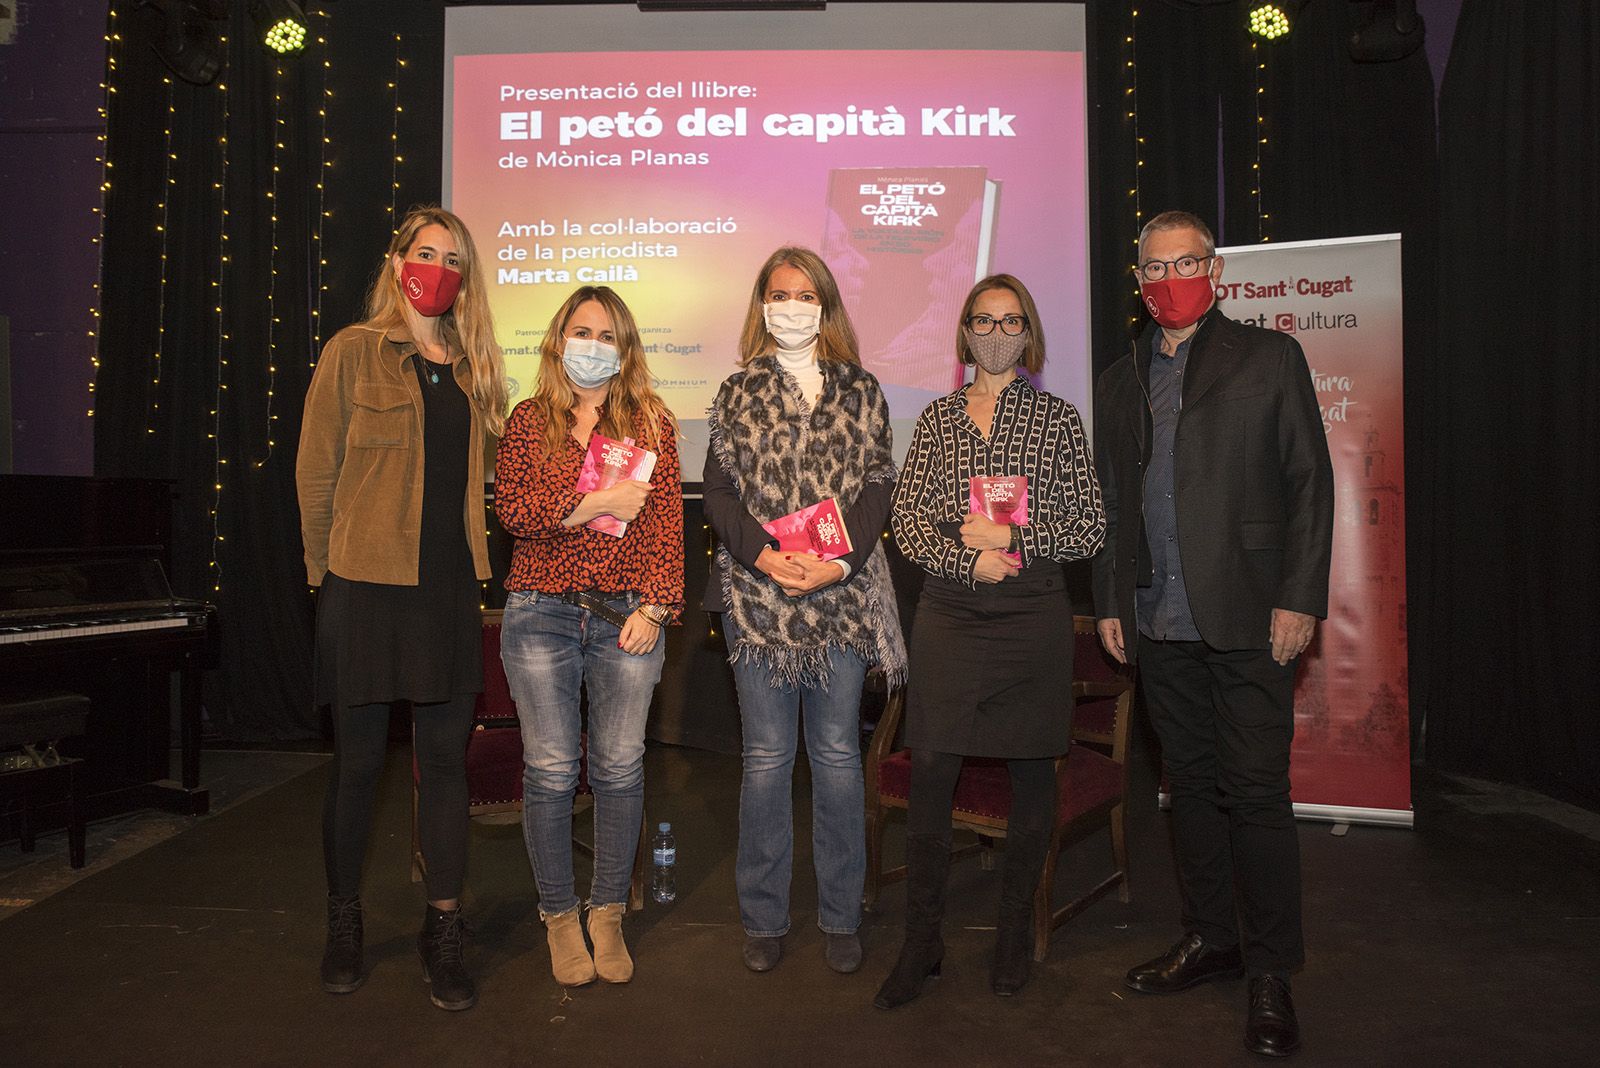 Presentació del llibre "El petó del capità Kirk" de Mònica Planas. Foto: Bernat Millet.